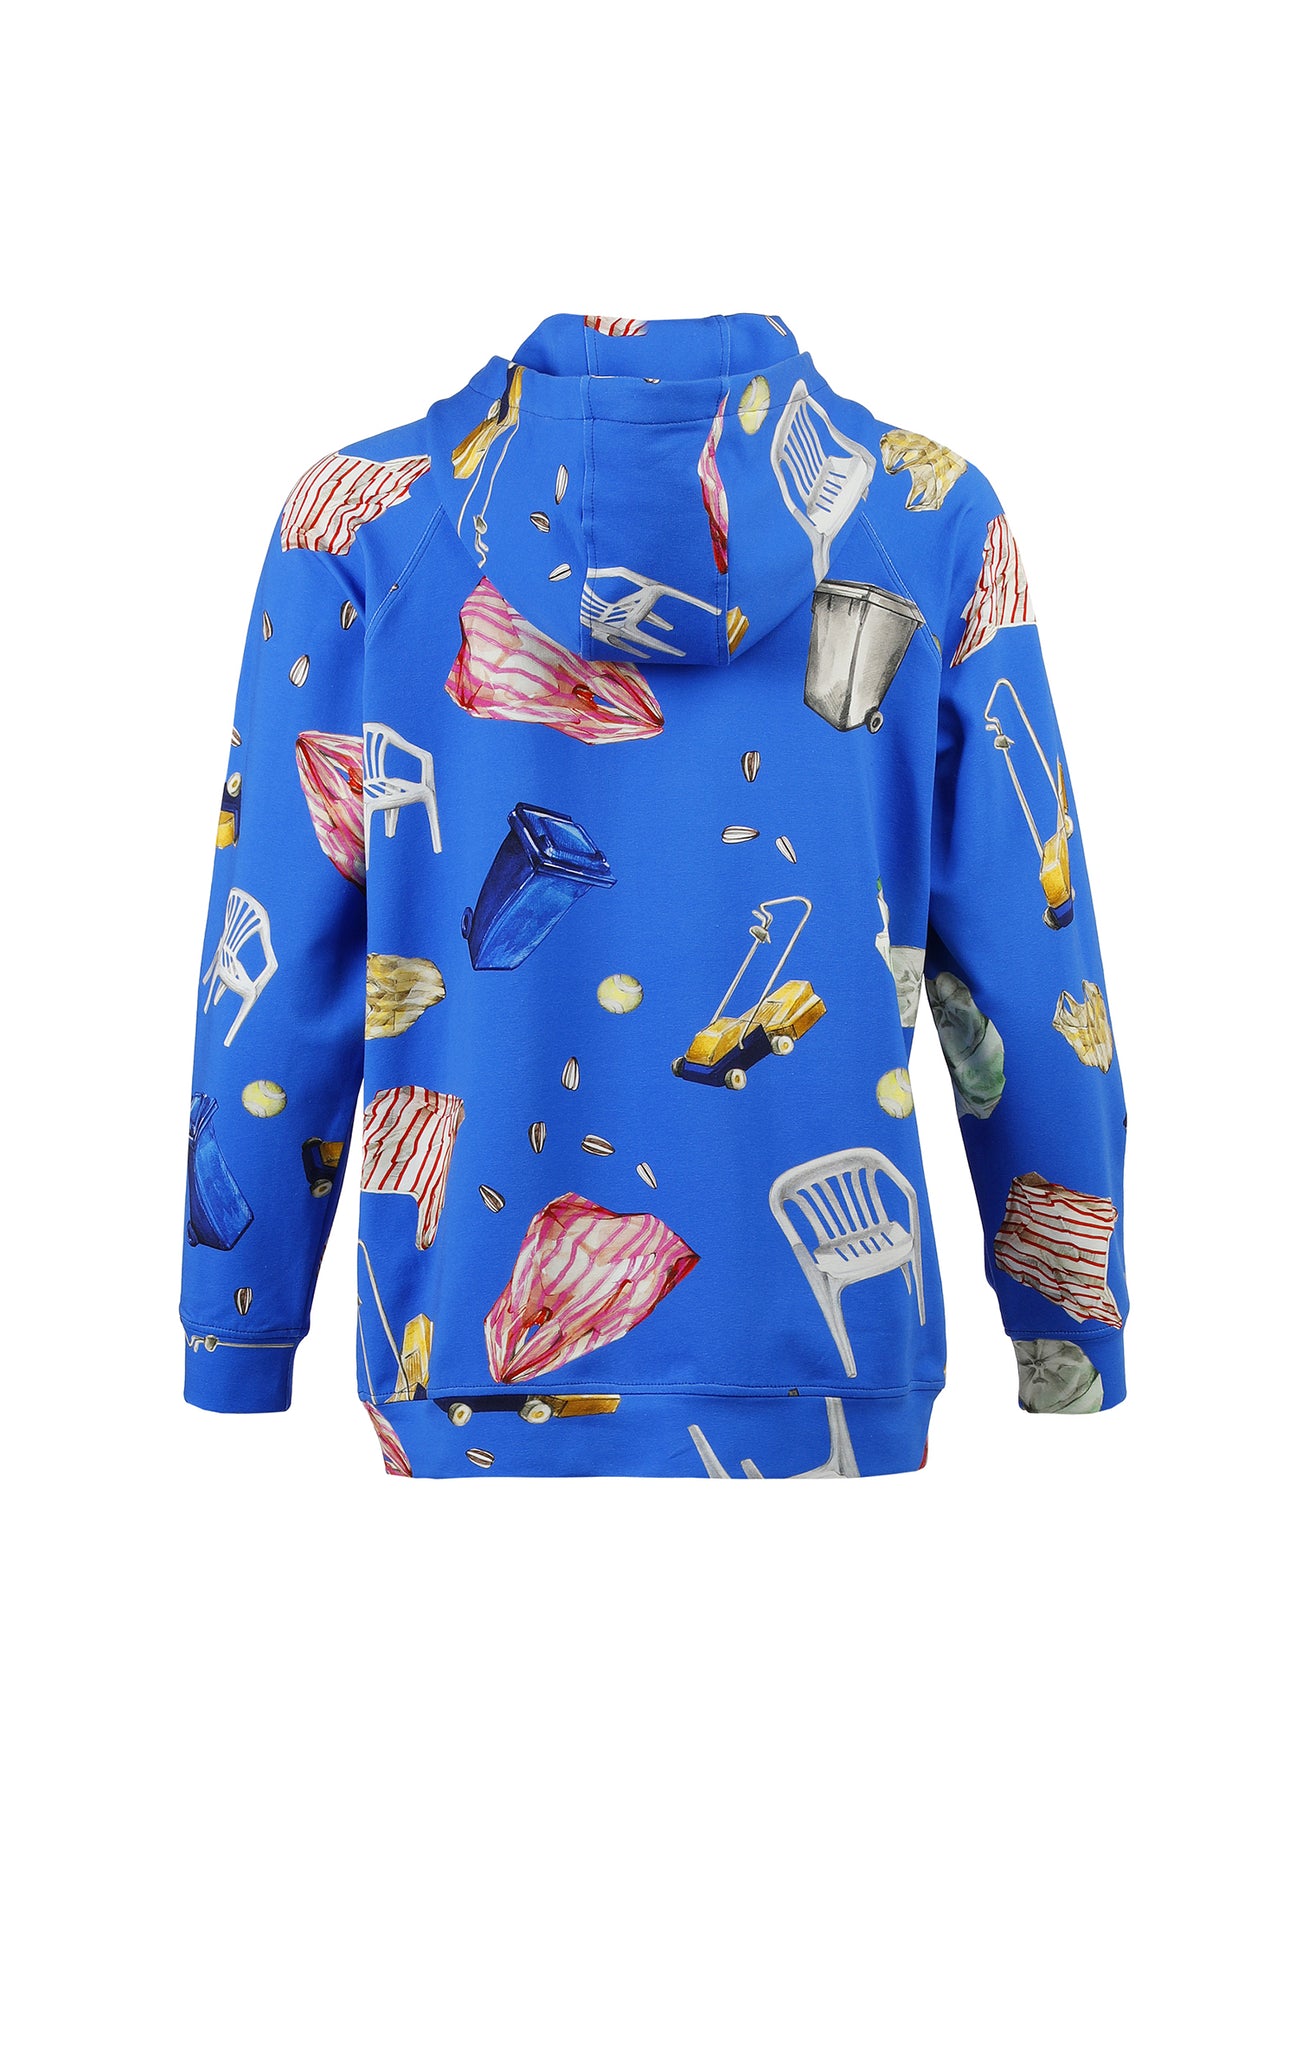 KEKES hooded sweatshirt 'objects blue'